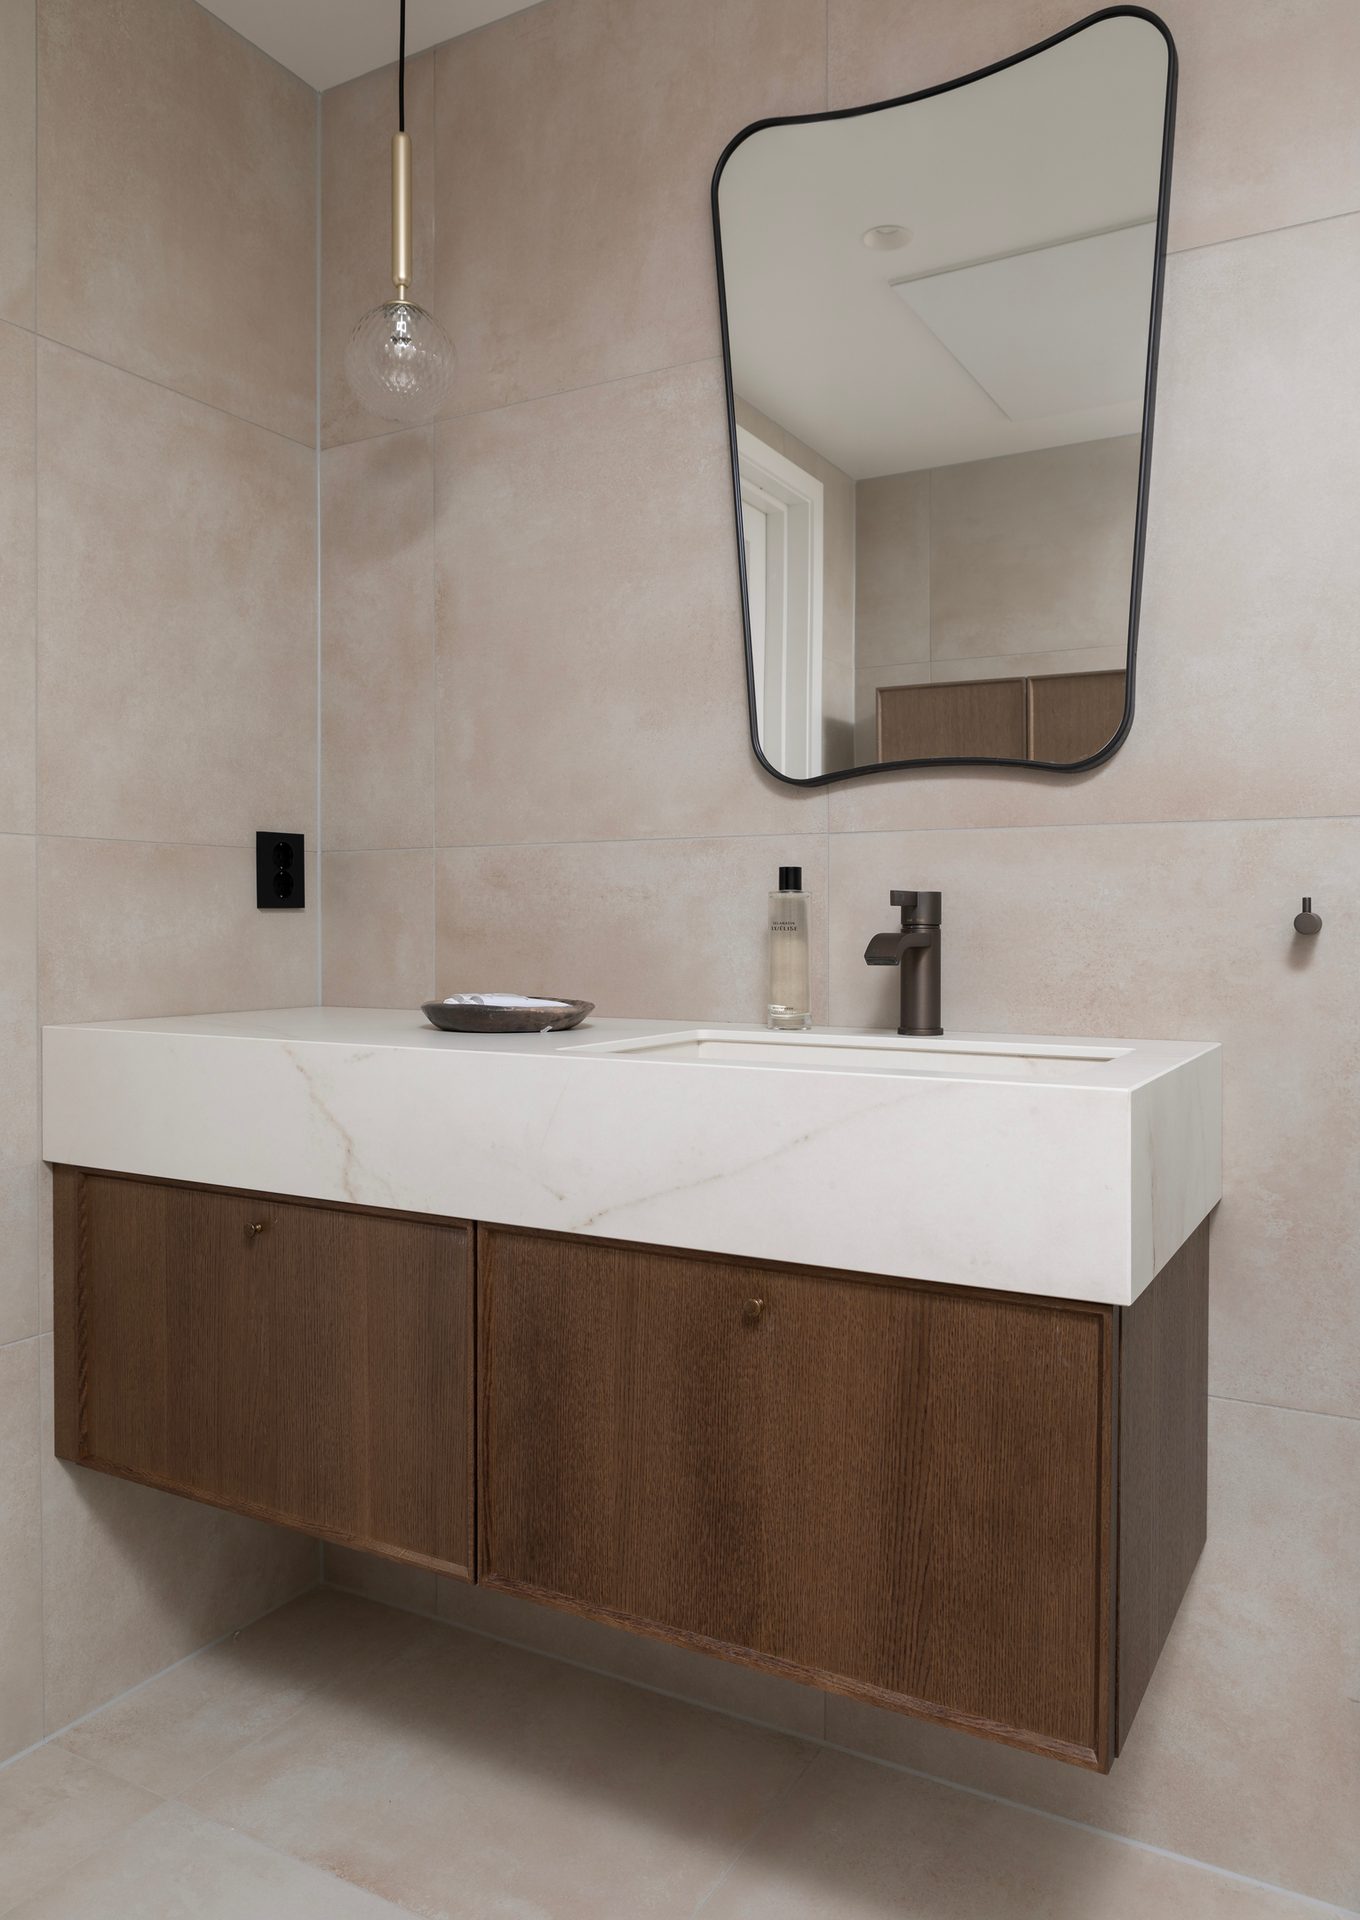 Bathroom cabinet, Plumbing fixture, Mirror, Tap, Cabinetry, Sink, Building, Wood